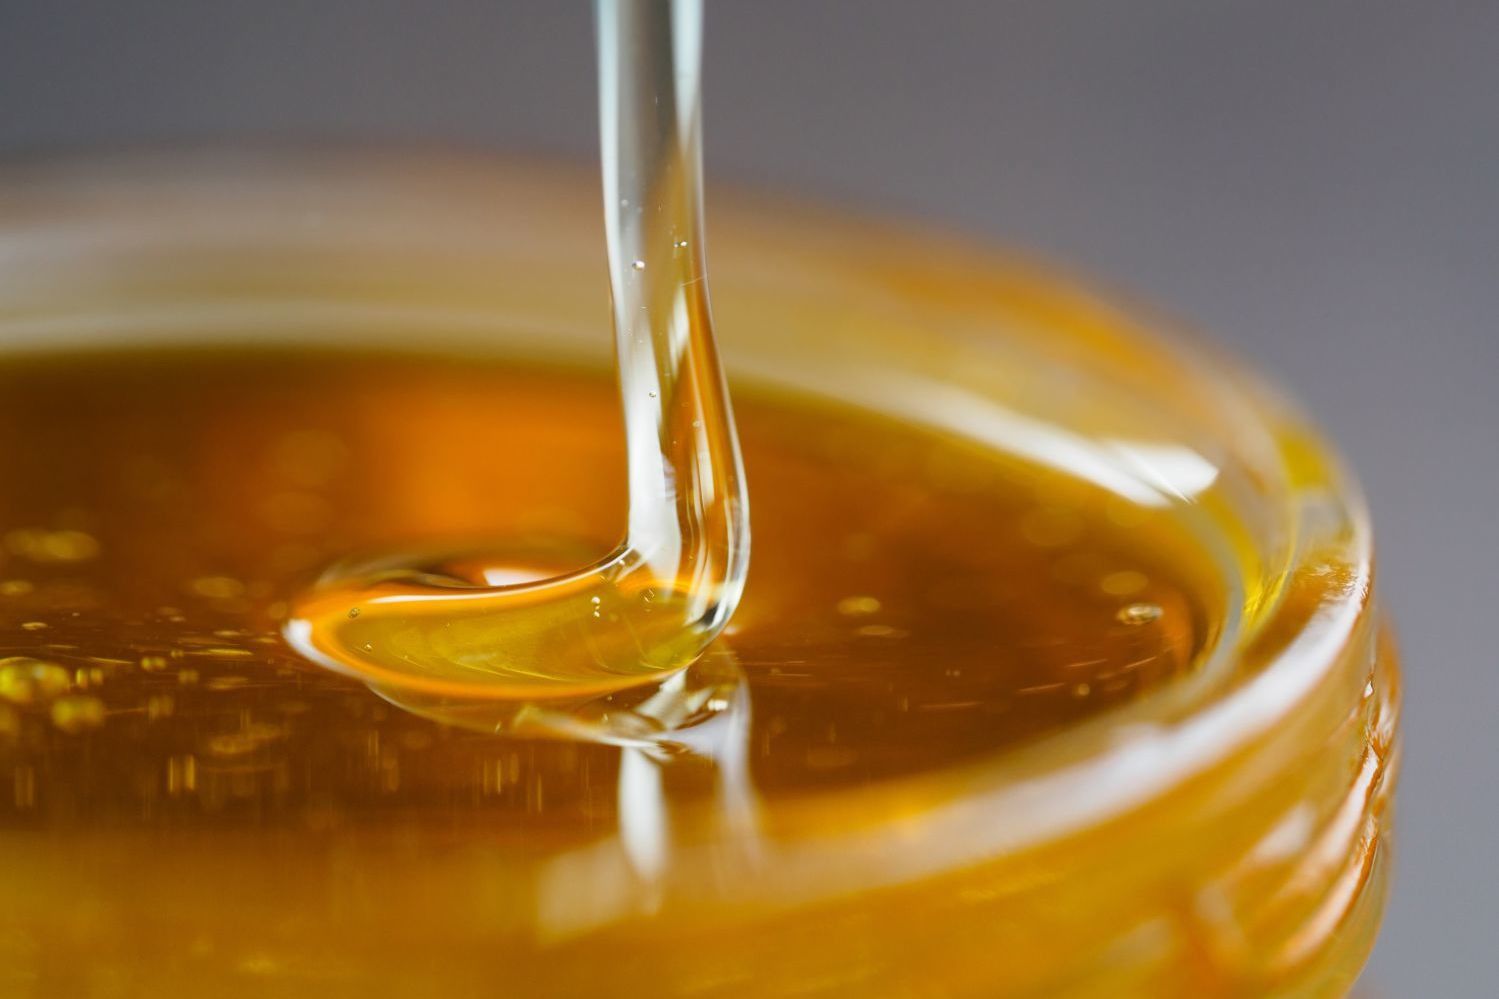 Специалистами лаборатории выявлен некачественный мед